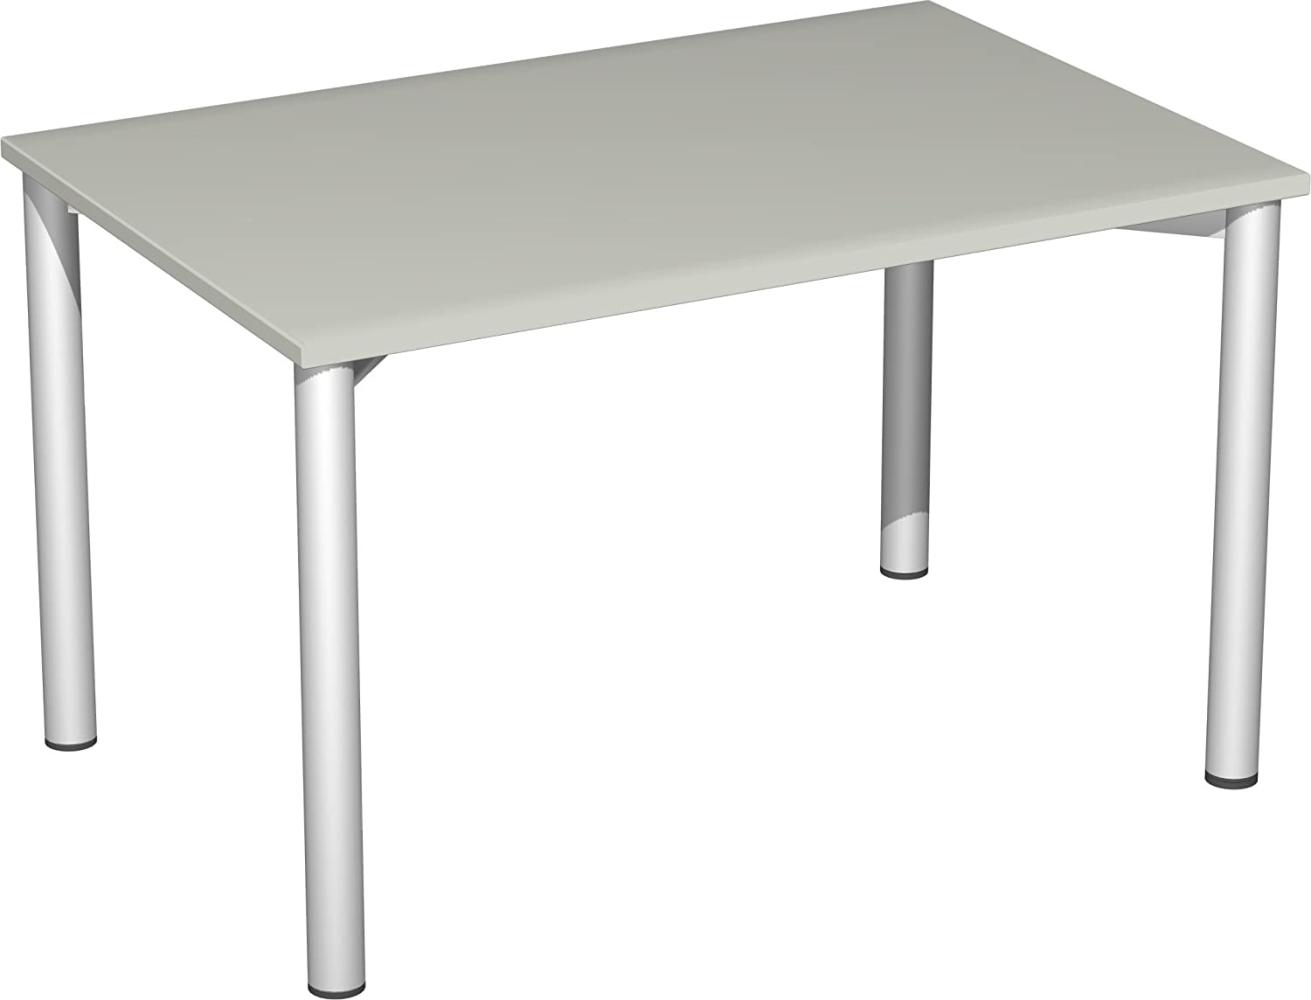 '4 Fuß Flex' Schreibtisch, Lichtgrau / Silber, 72 x 120 x 80 cm Bild 1